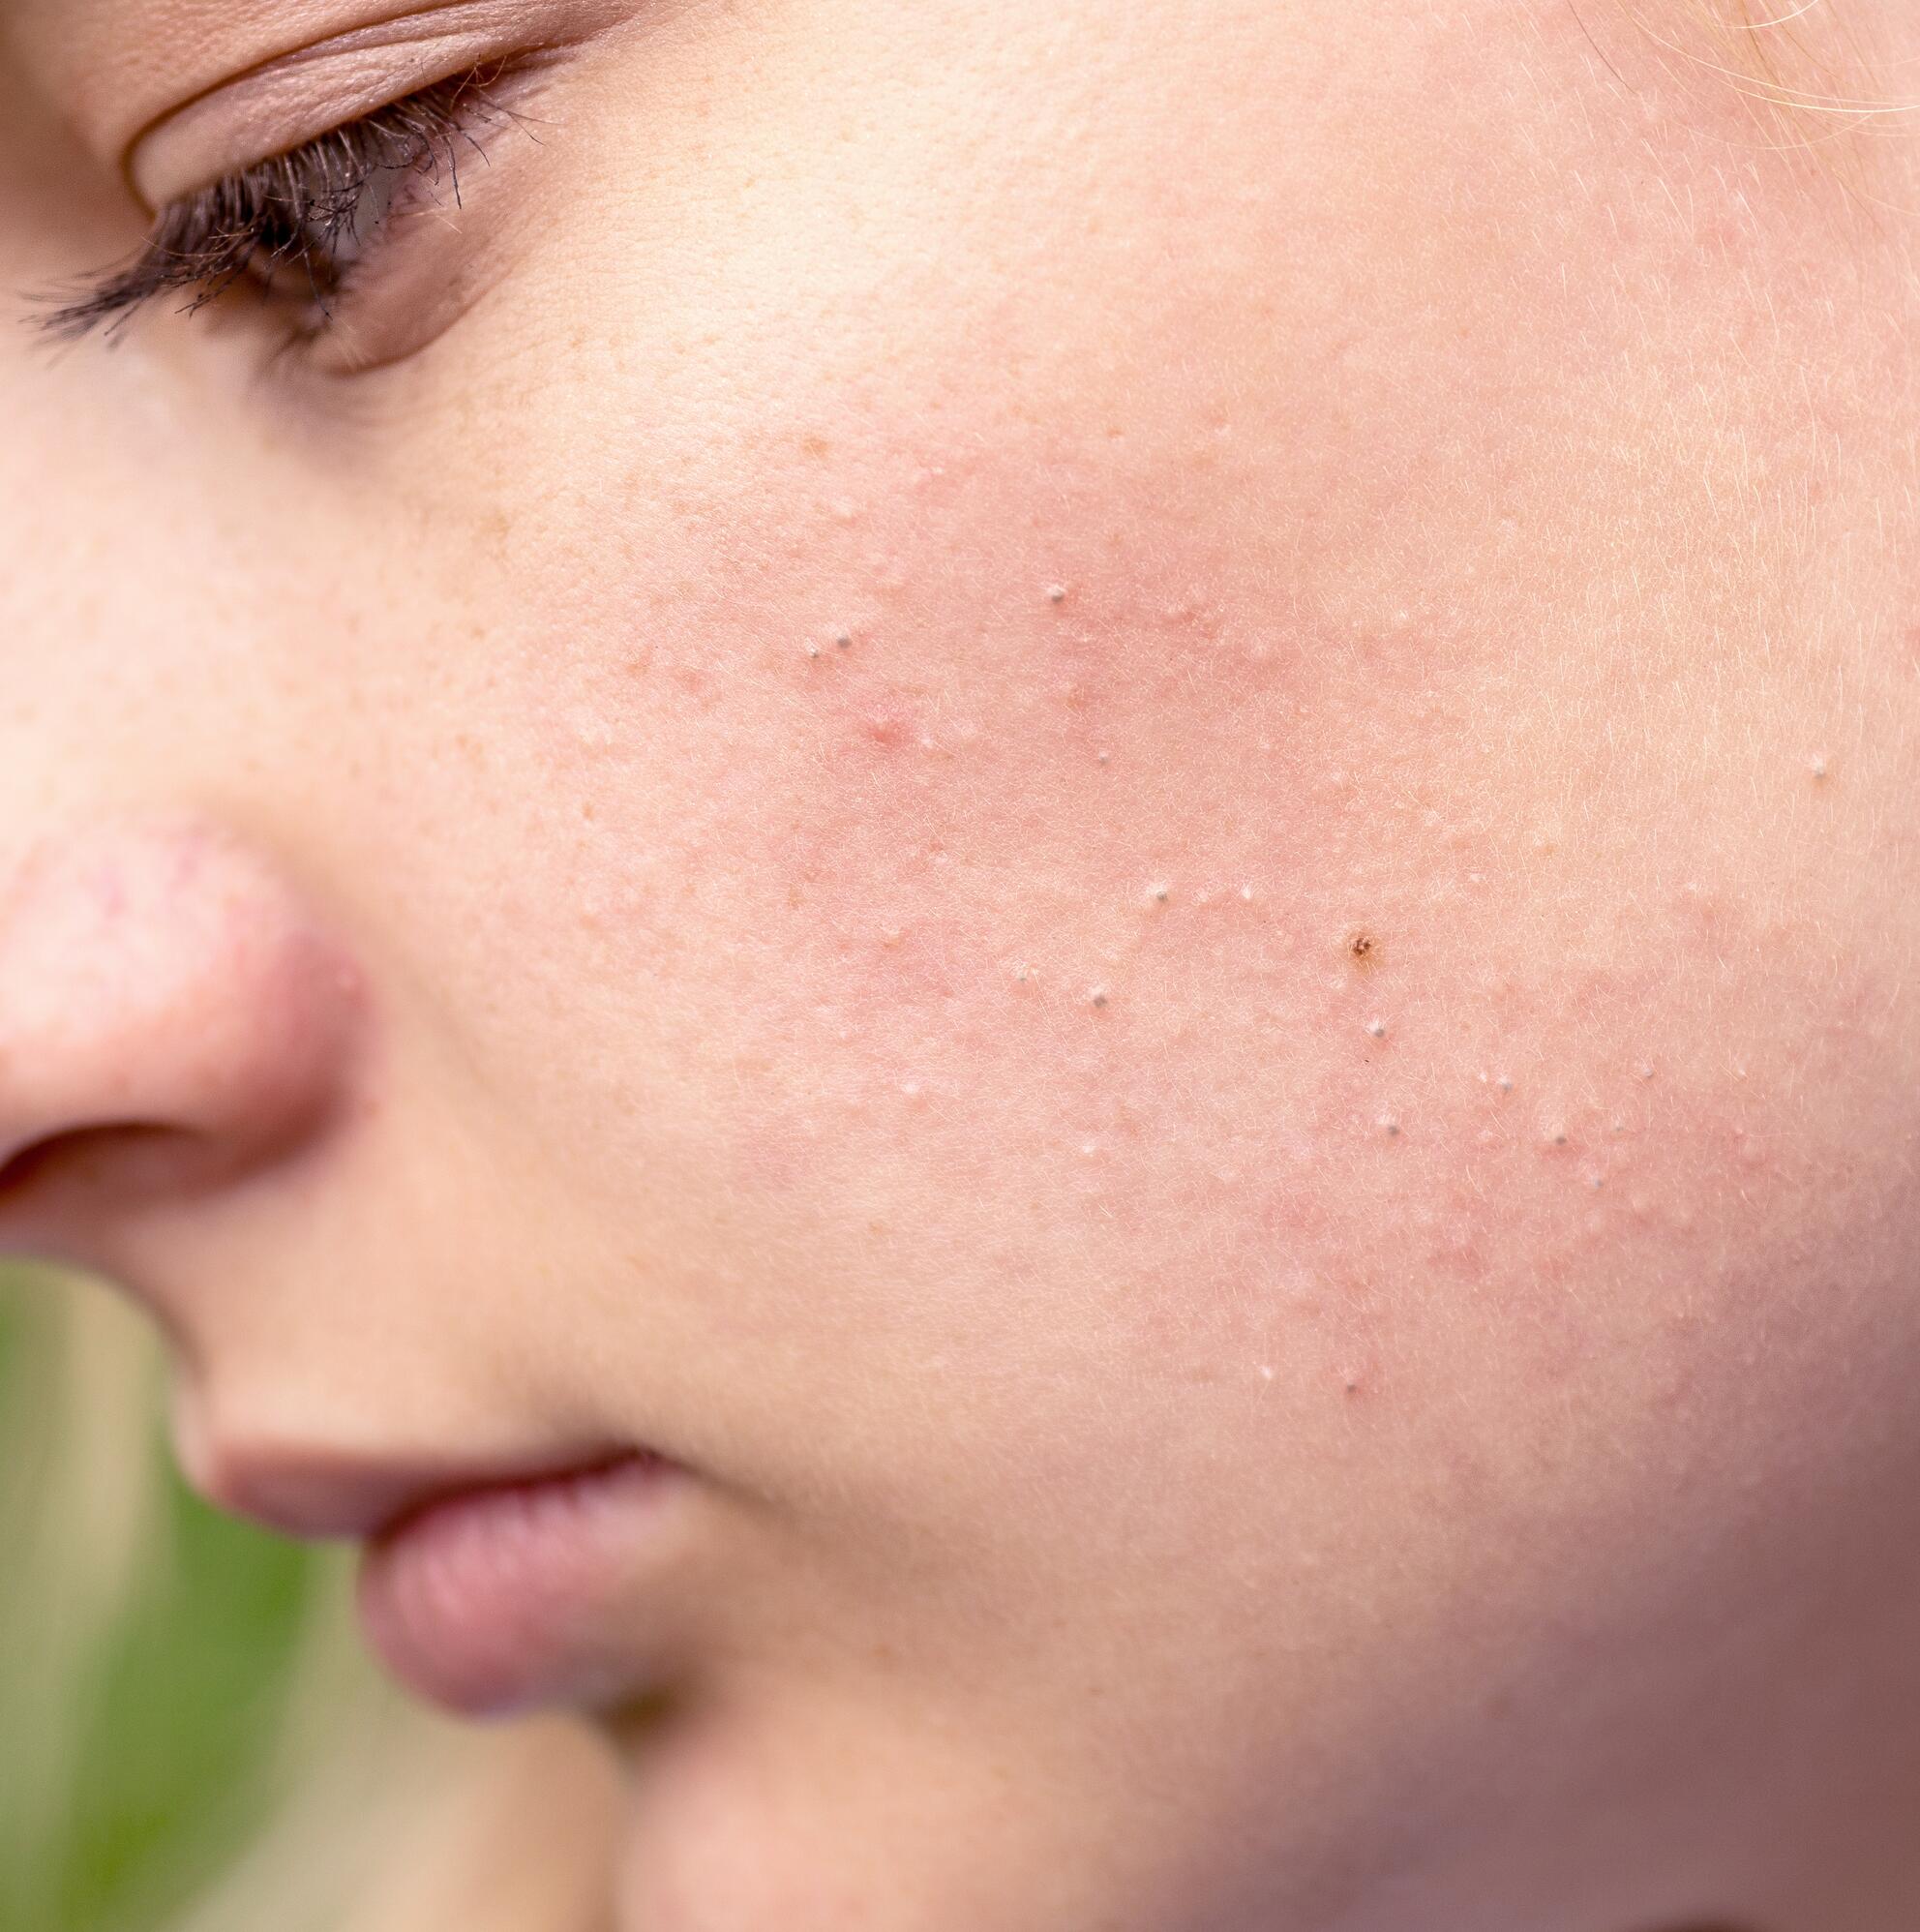 Clear : Vaincre l'acné hormonale – Circles